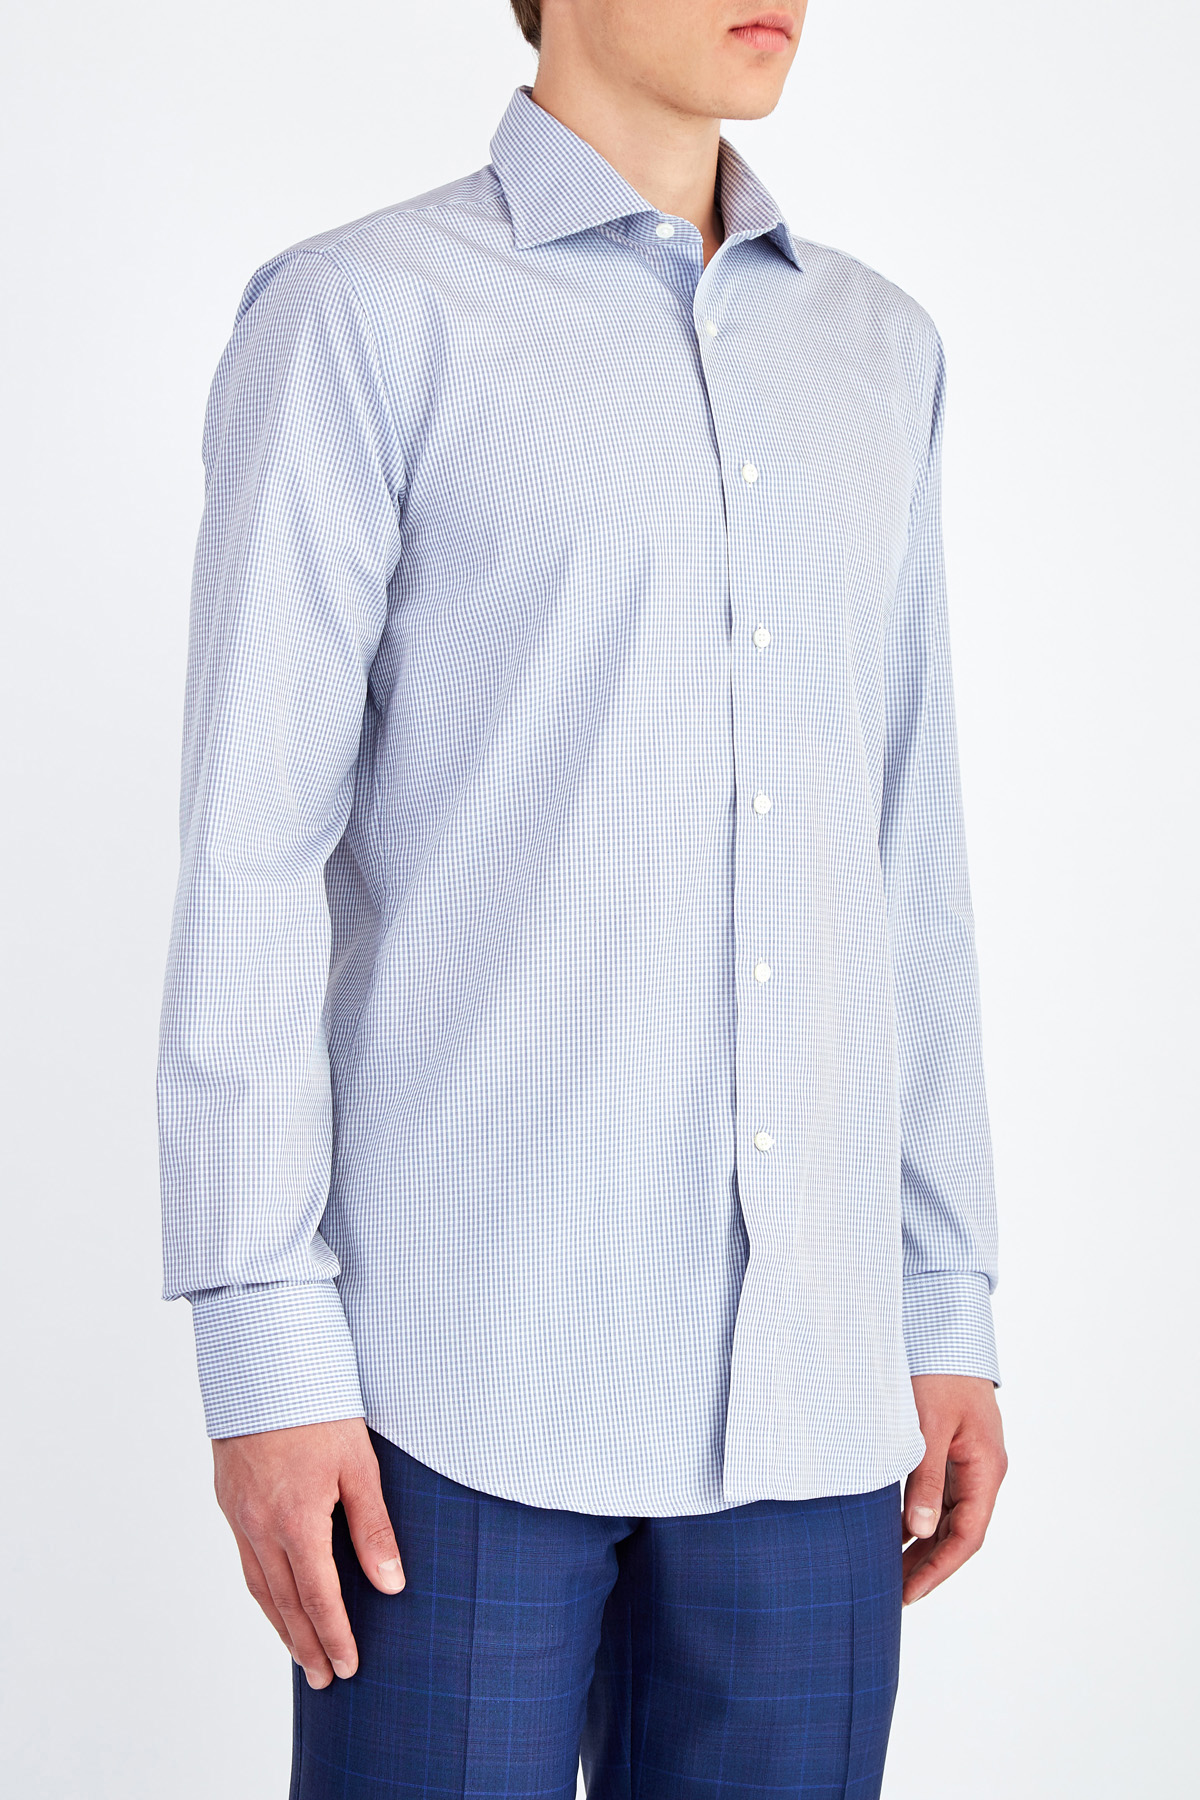 Классическая рубашка из хлопка Impeccabile с тканым микро-принтом CANALI, цвет голубой, размер 48;50;52;58 - фото 3